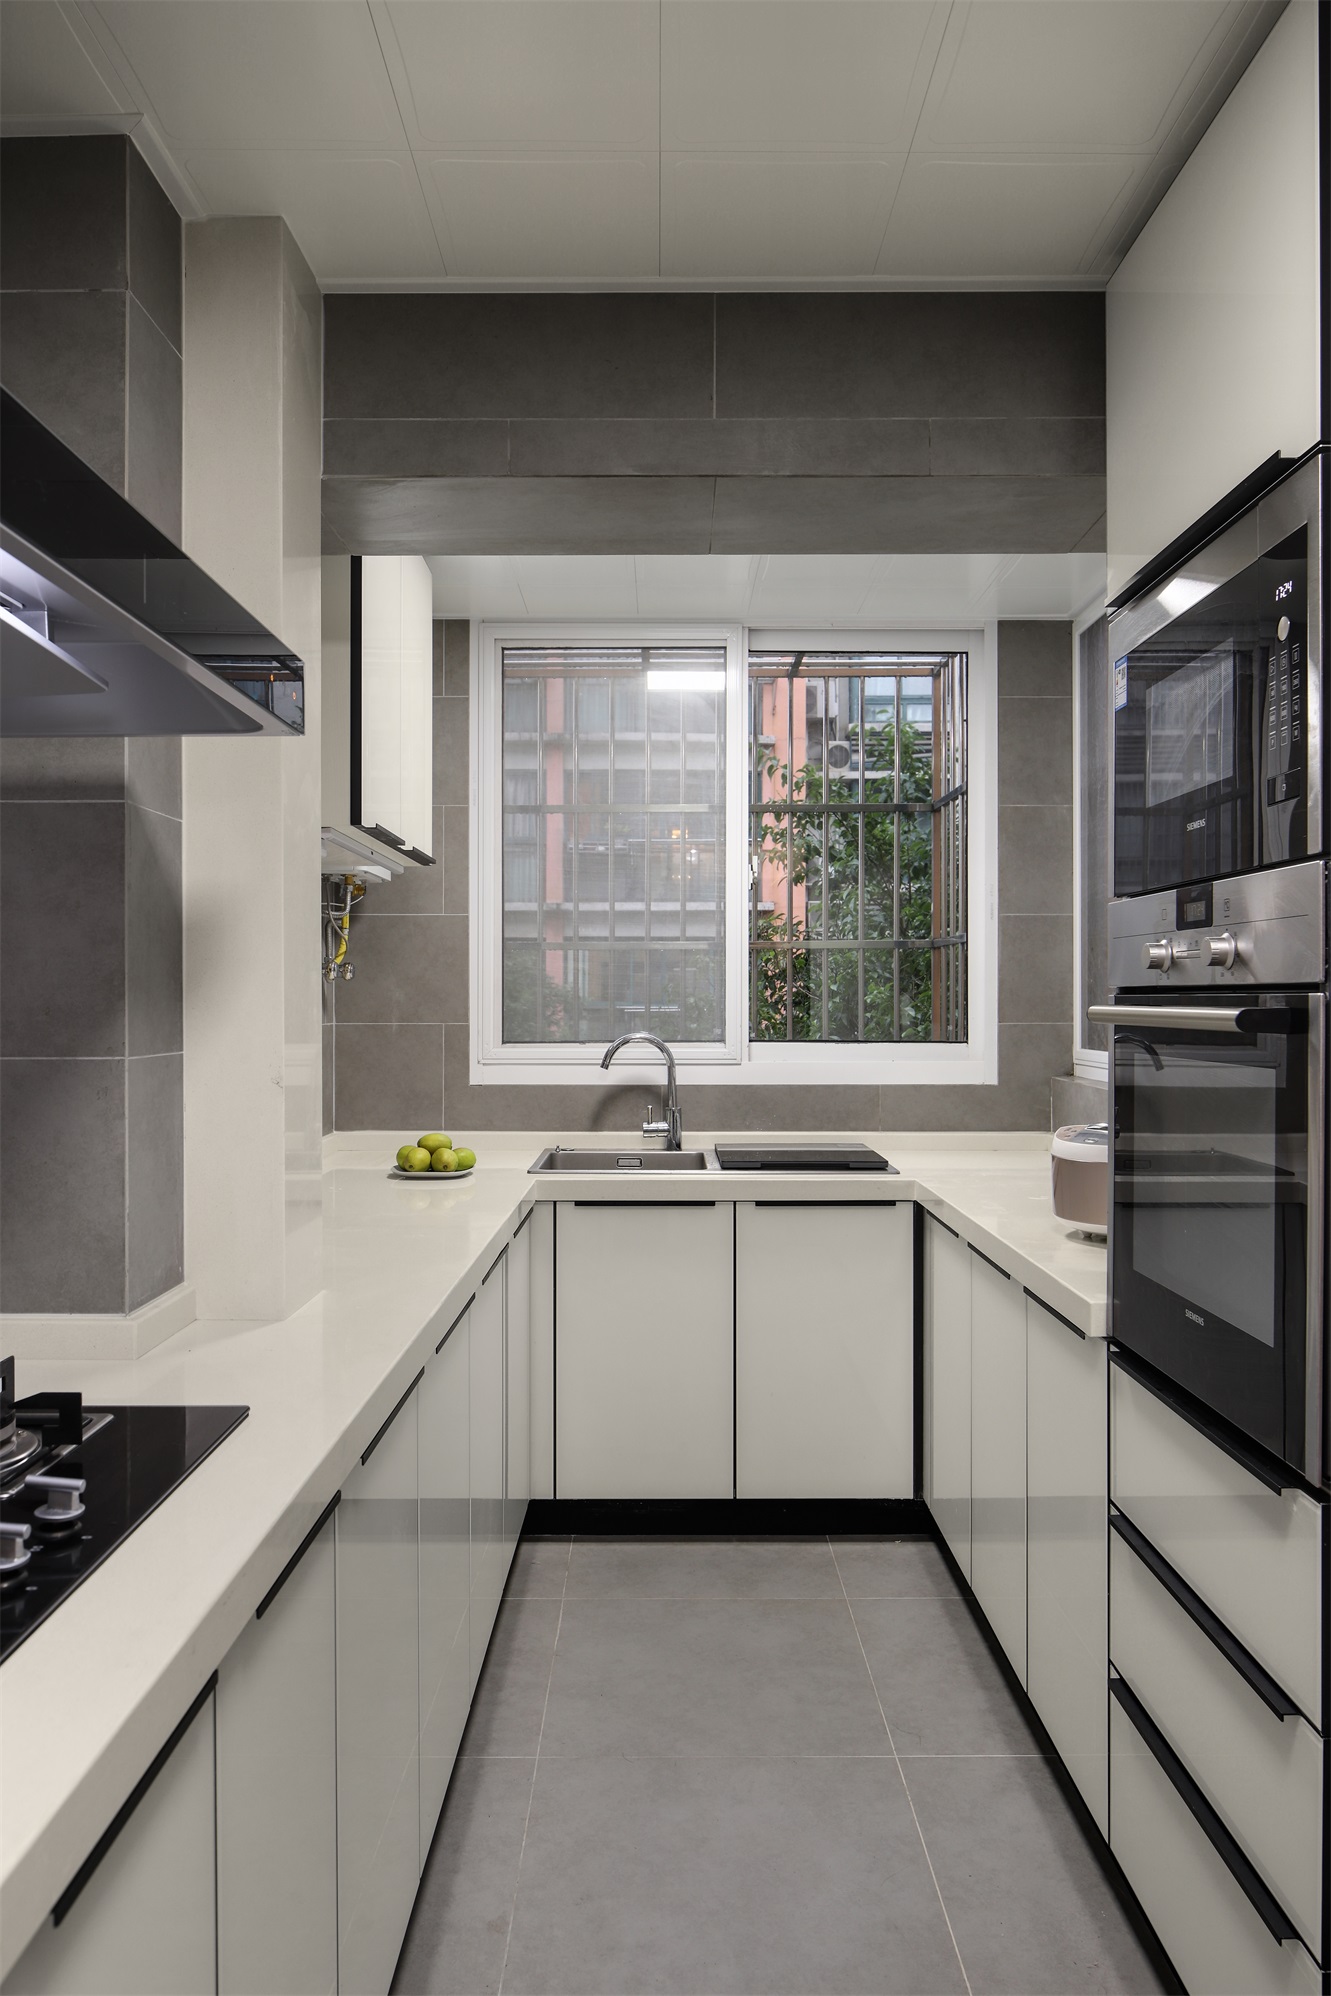 厨房整体充满了现代感，白色橱柜精致舒适，增加了烹饪空间的通透性。